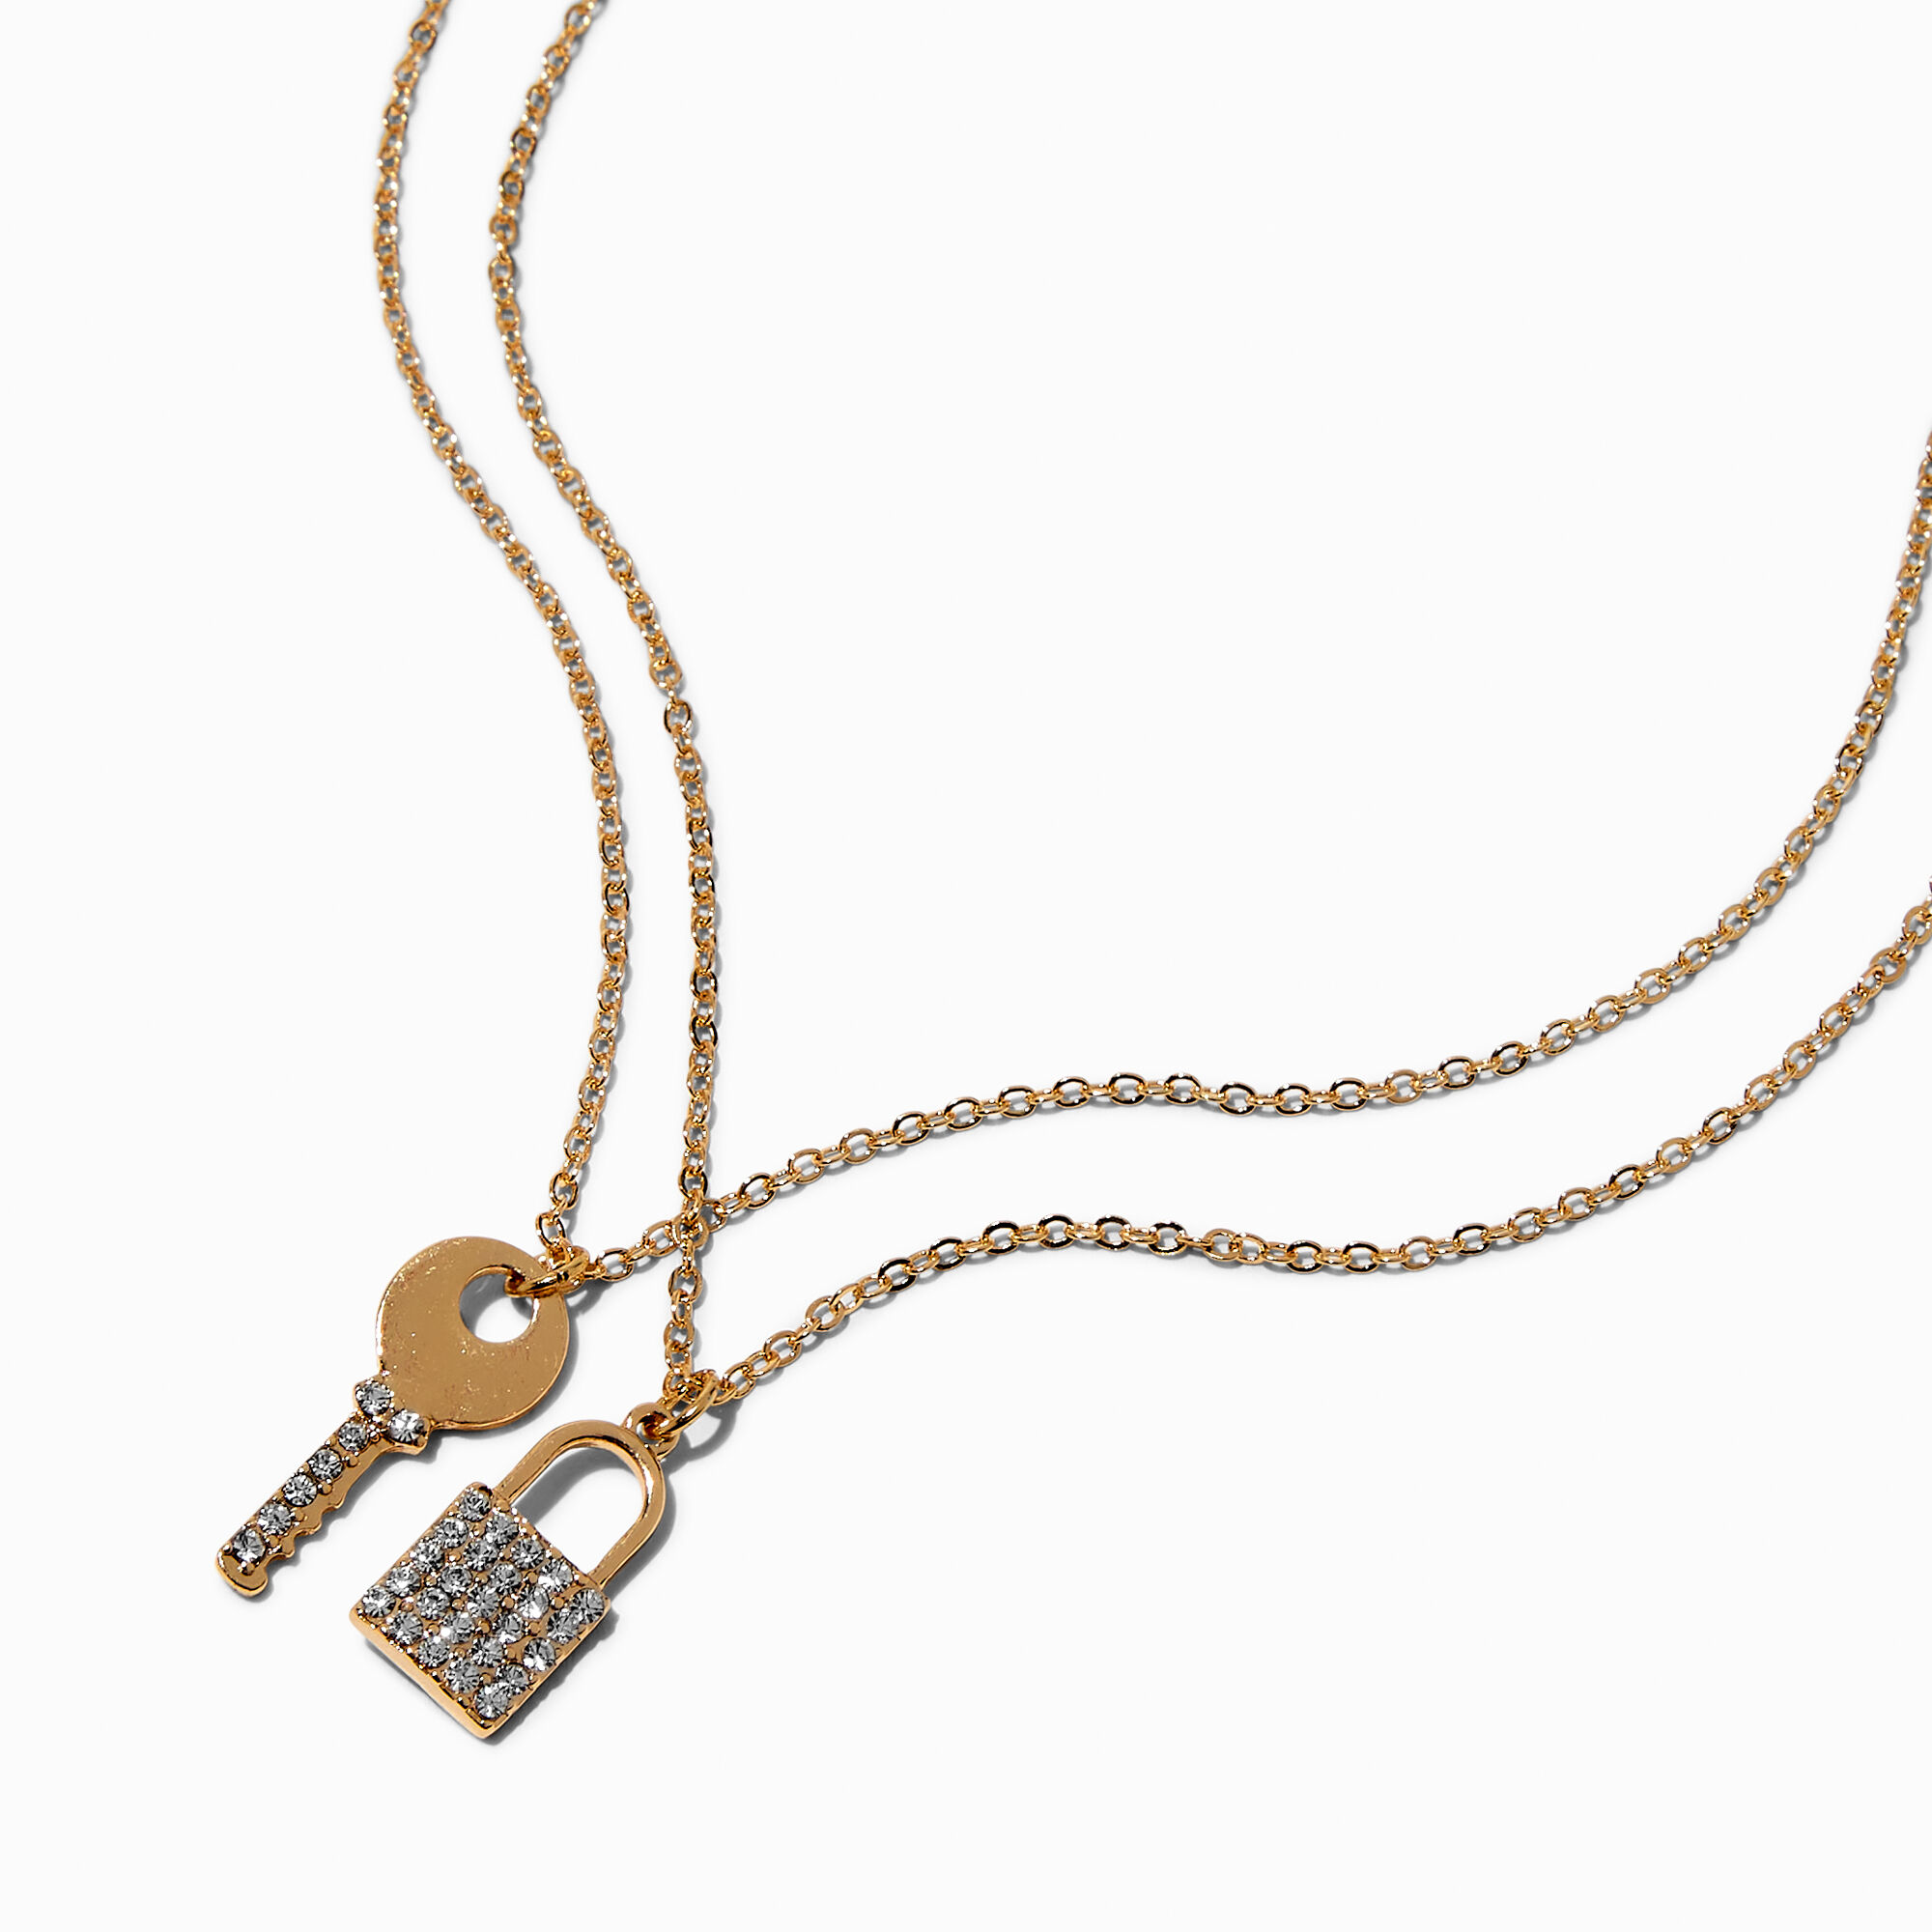 View Claires Pavé Lock Key Tone Pendant Necklaces 2 Pack Gold information